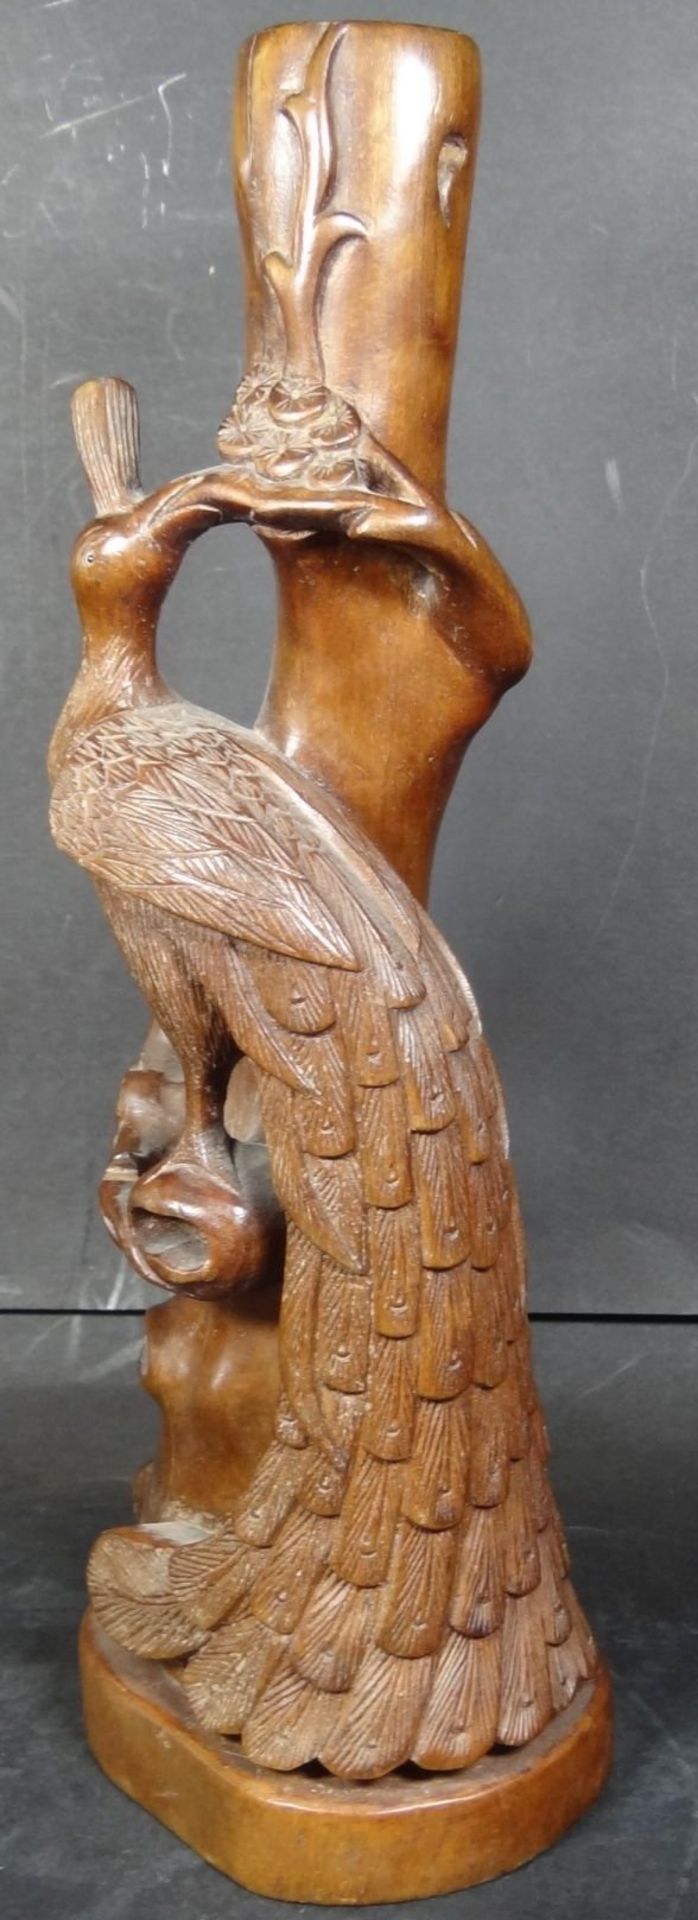 Holzschnitzerei "Pfau" wohl Lampenfuss, China, H-30 cm"""" - Bild 3 aus 6